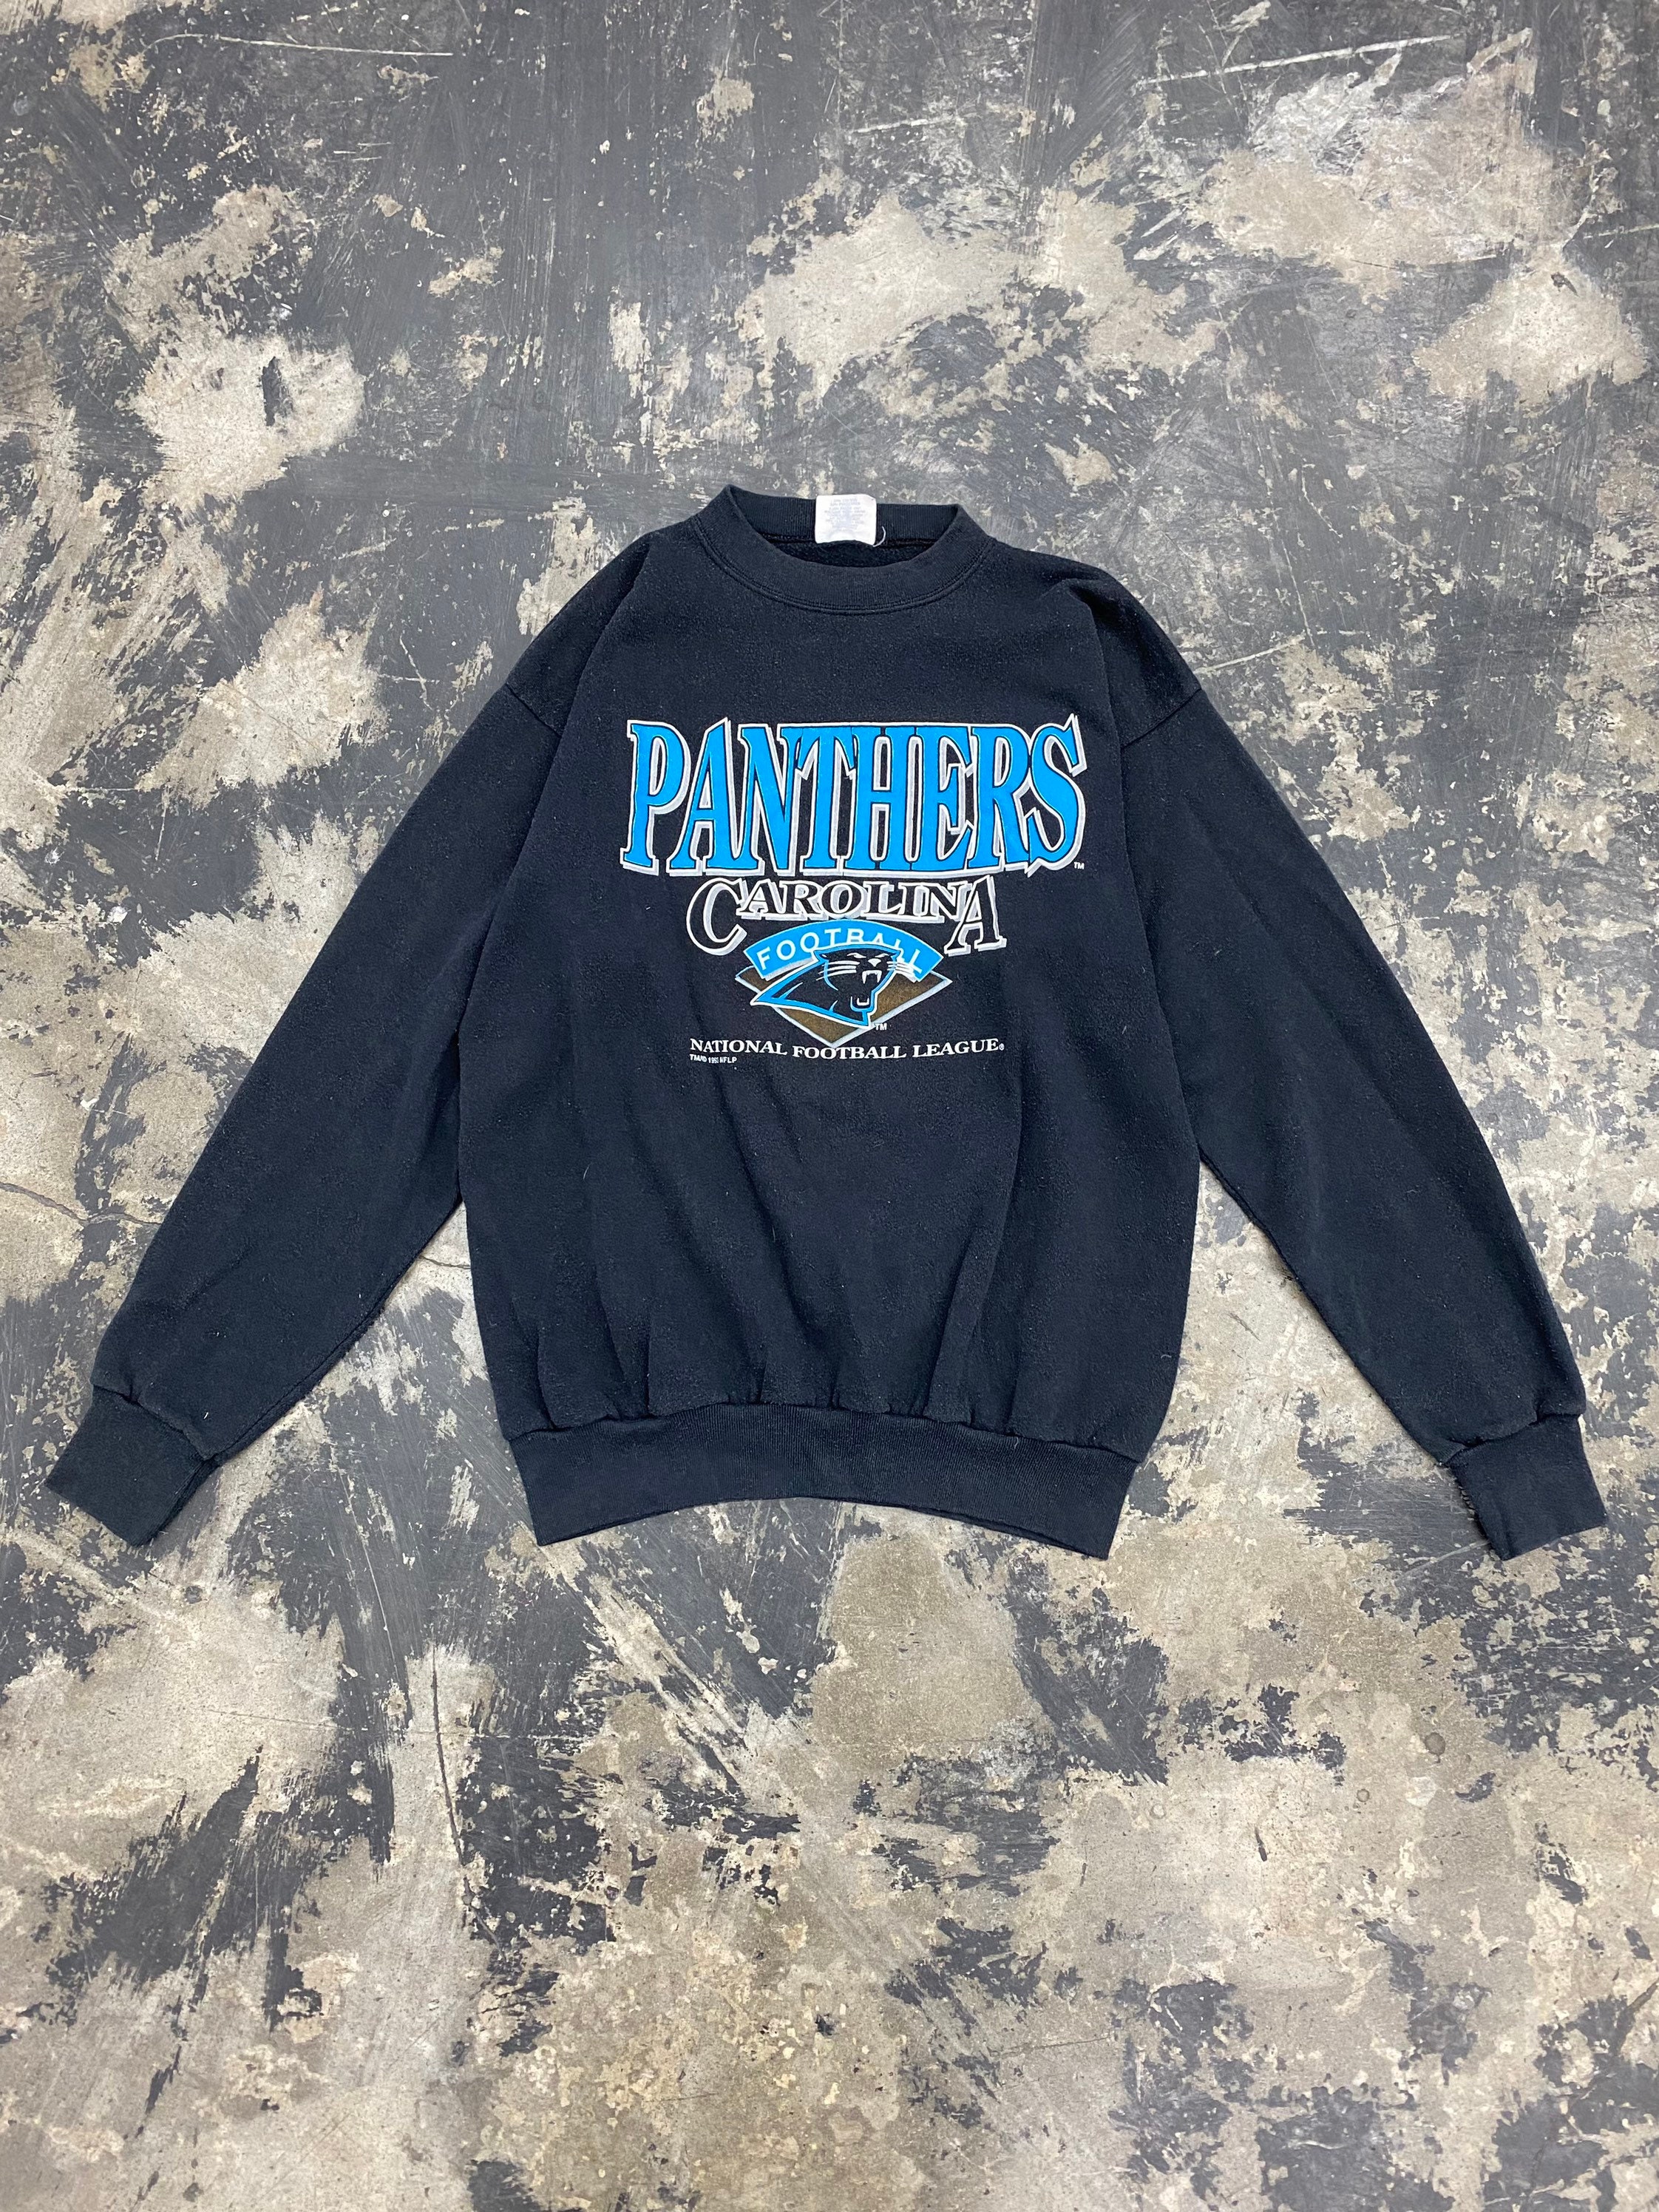 90s Carolina Panthers NFL Sweatshirt Size Medium - Etsy